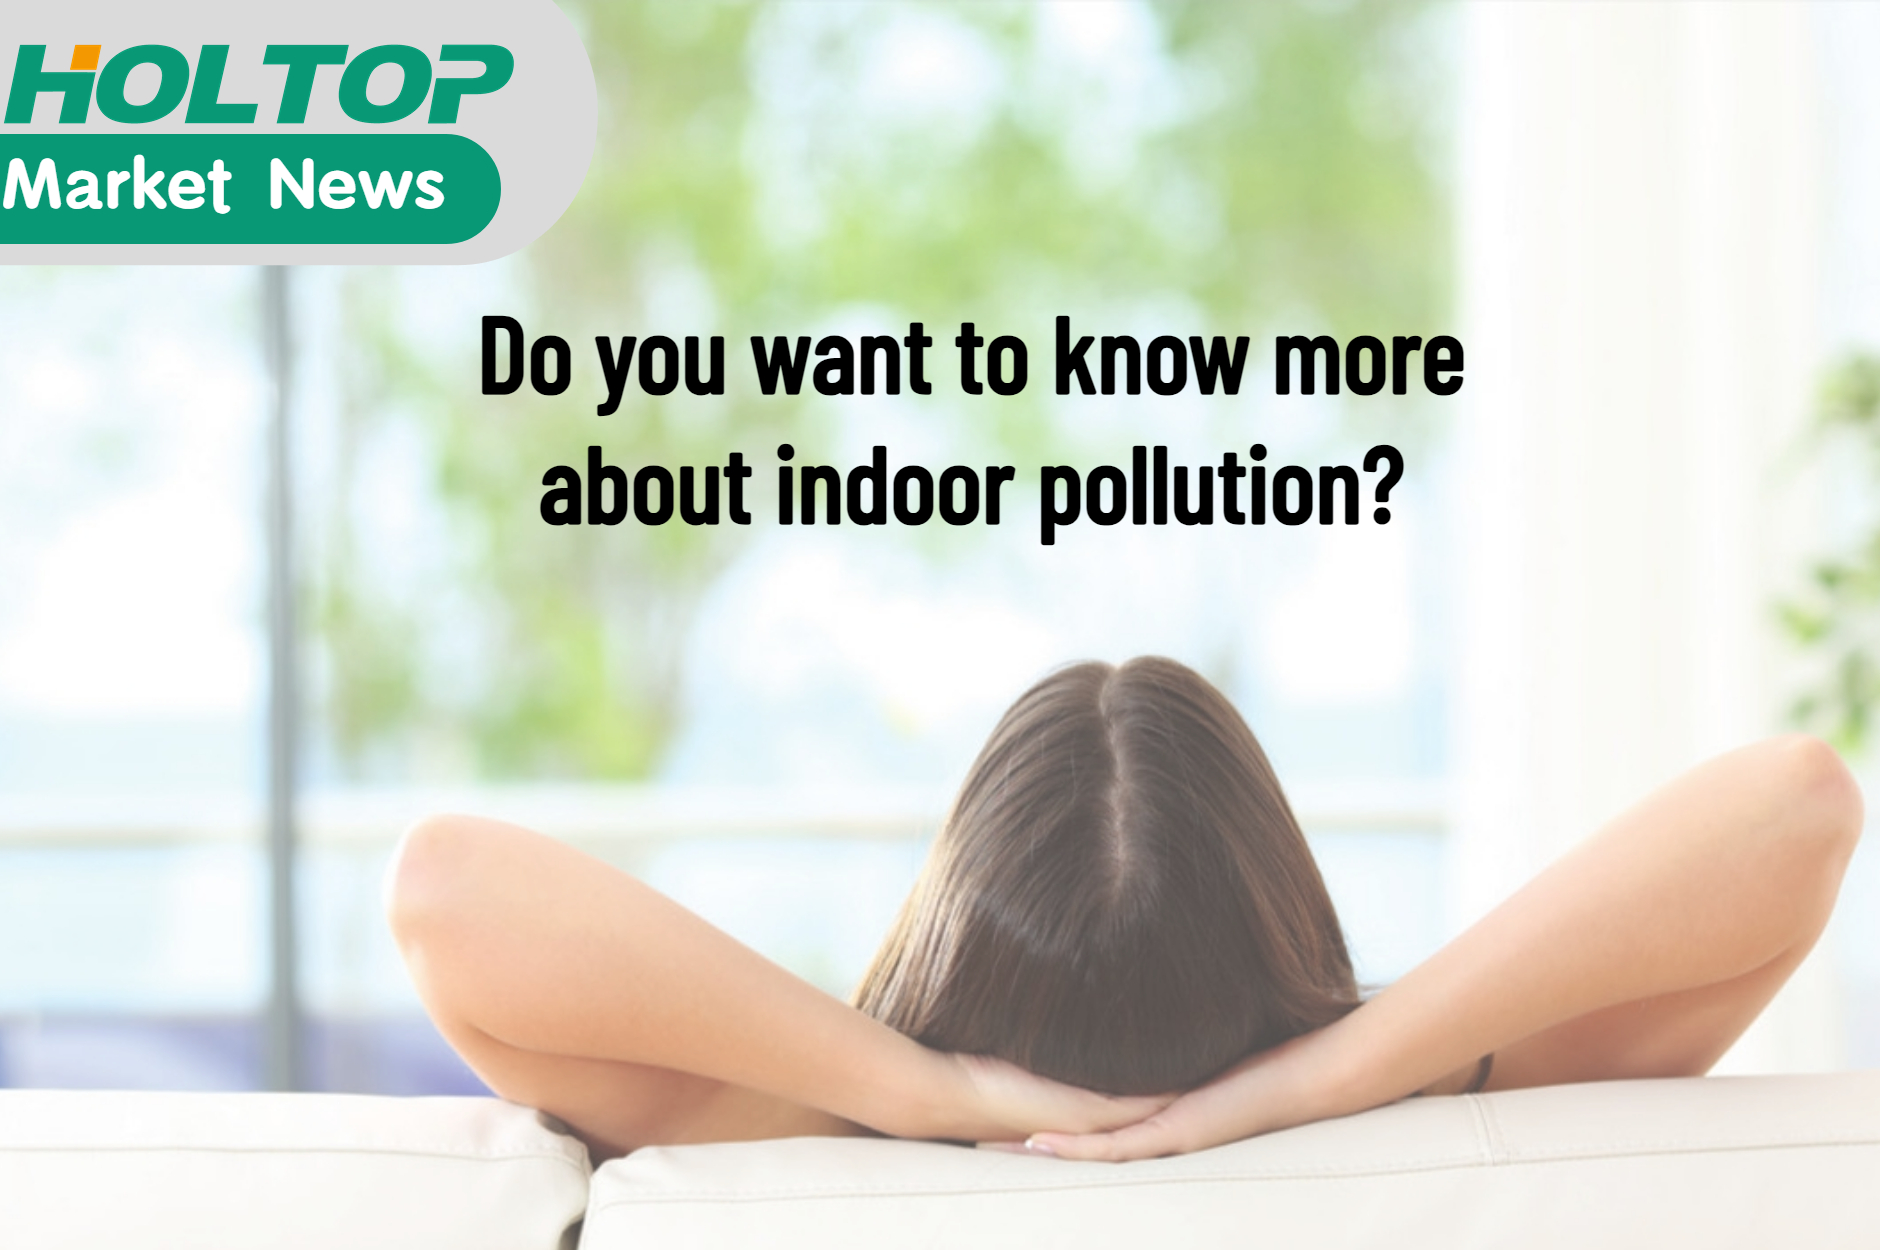 Wil je meer weten over vervuiling binnenshuis